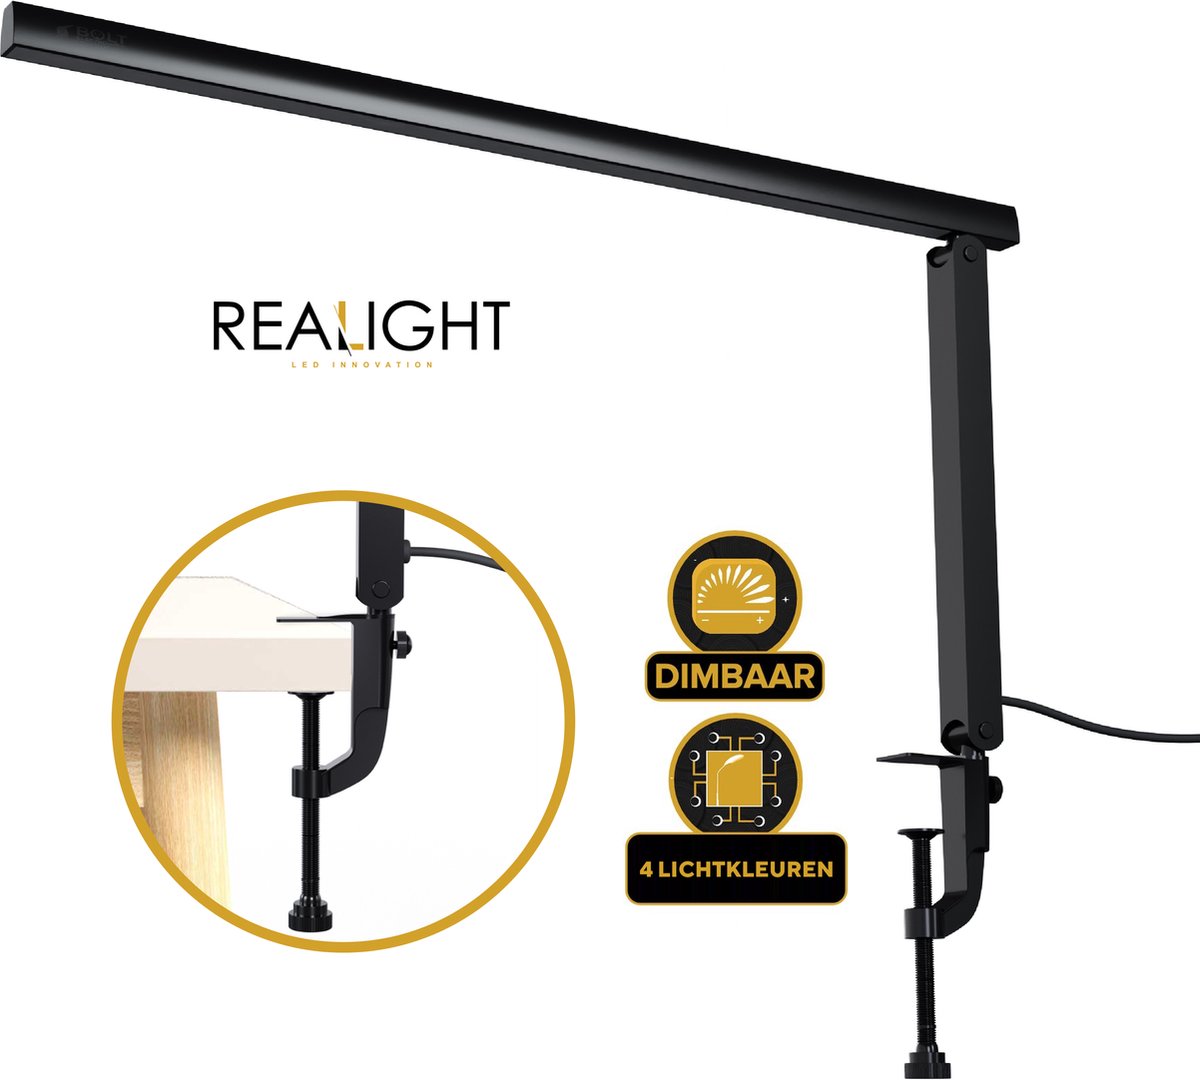 Realight dimbare bureaulamp – Krachtige LED Lamp met 4 Lichtkleuren – Gemakkelijk te bevestigen op bureaus tot 6 cm dik – 360° Rotatie – LED lichten – Licht aluminium – 8 Watt - Zwart